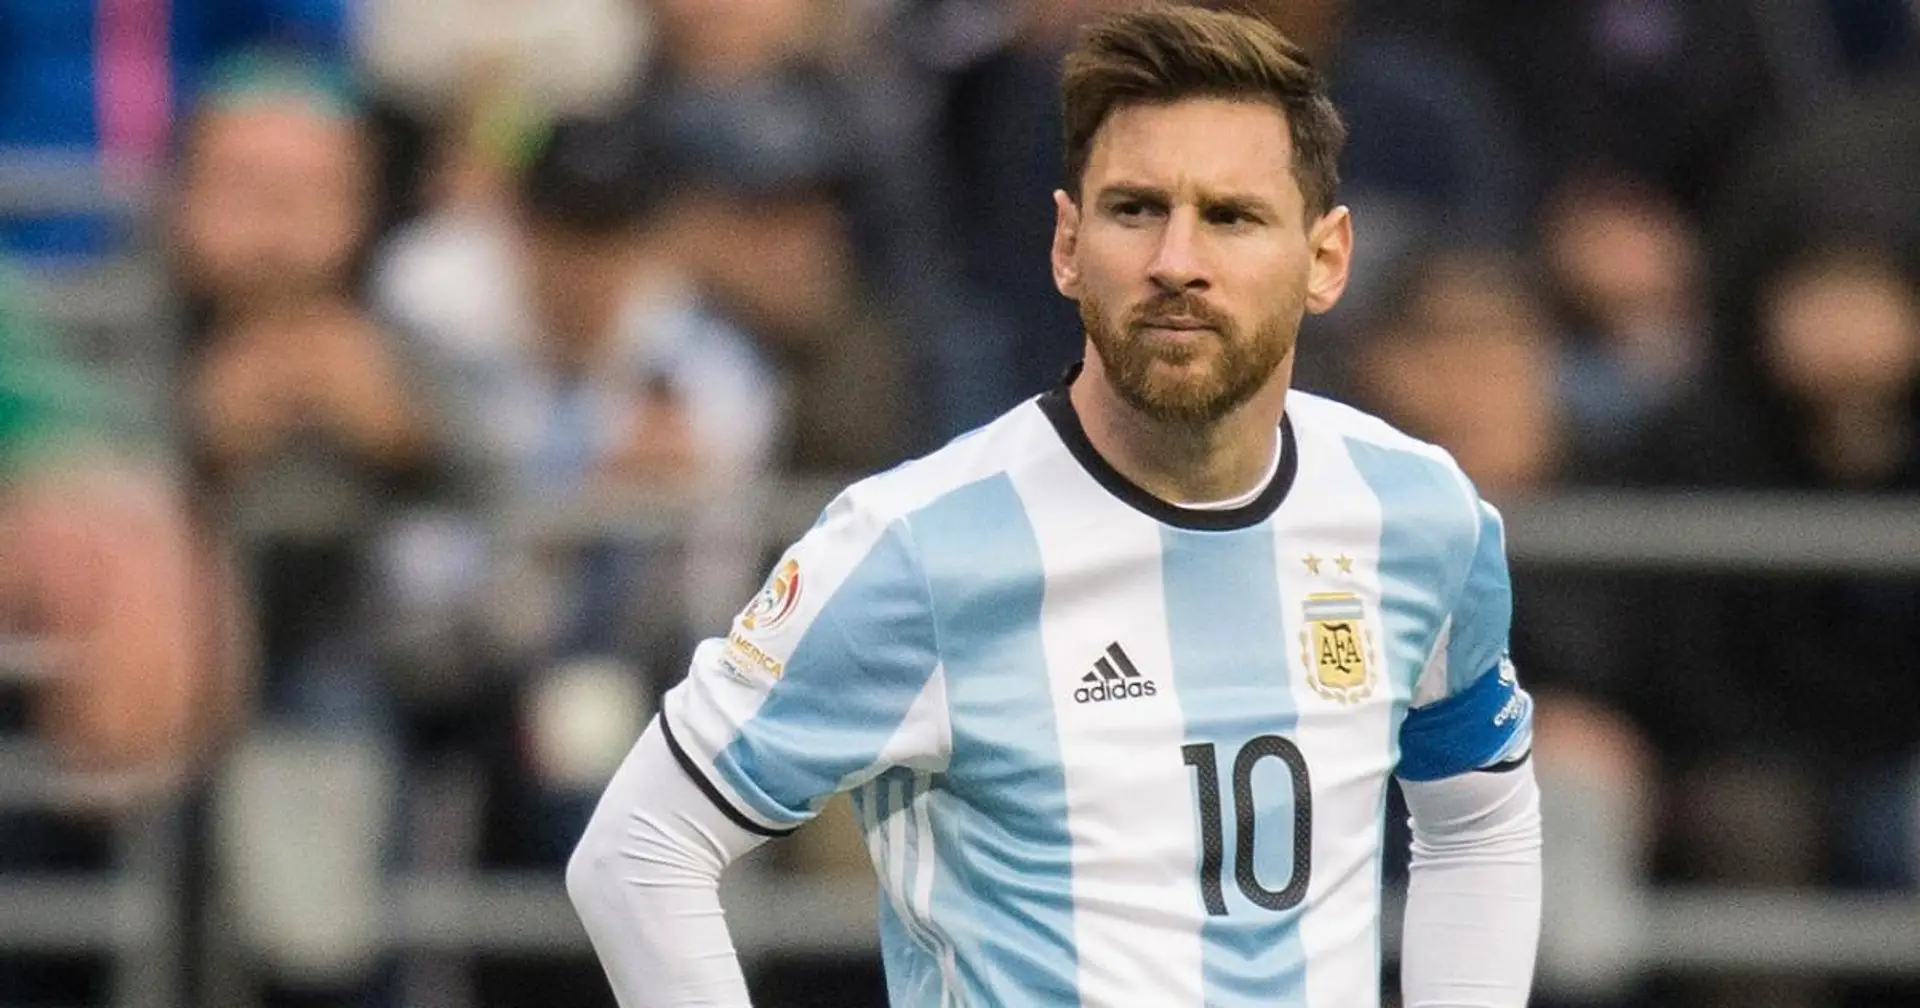 "Si Messi avait représenté l'Espagne, il aurait remporté la Coupe du monde": selon l'ancien défenseur de l'Espanyol Joan Capdevila